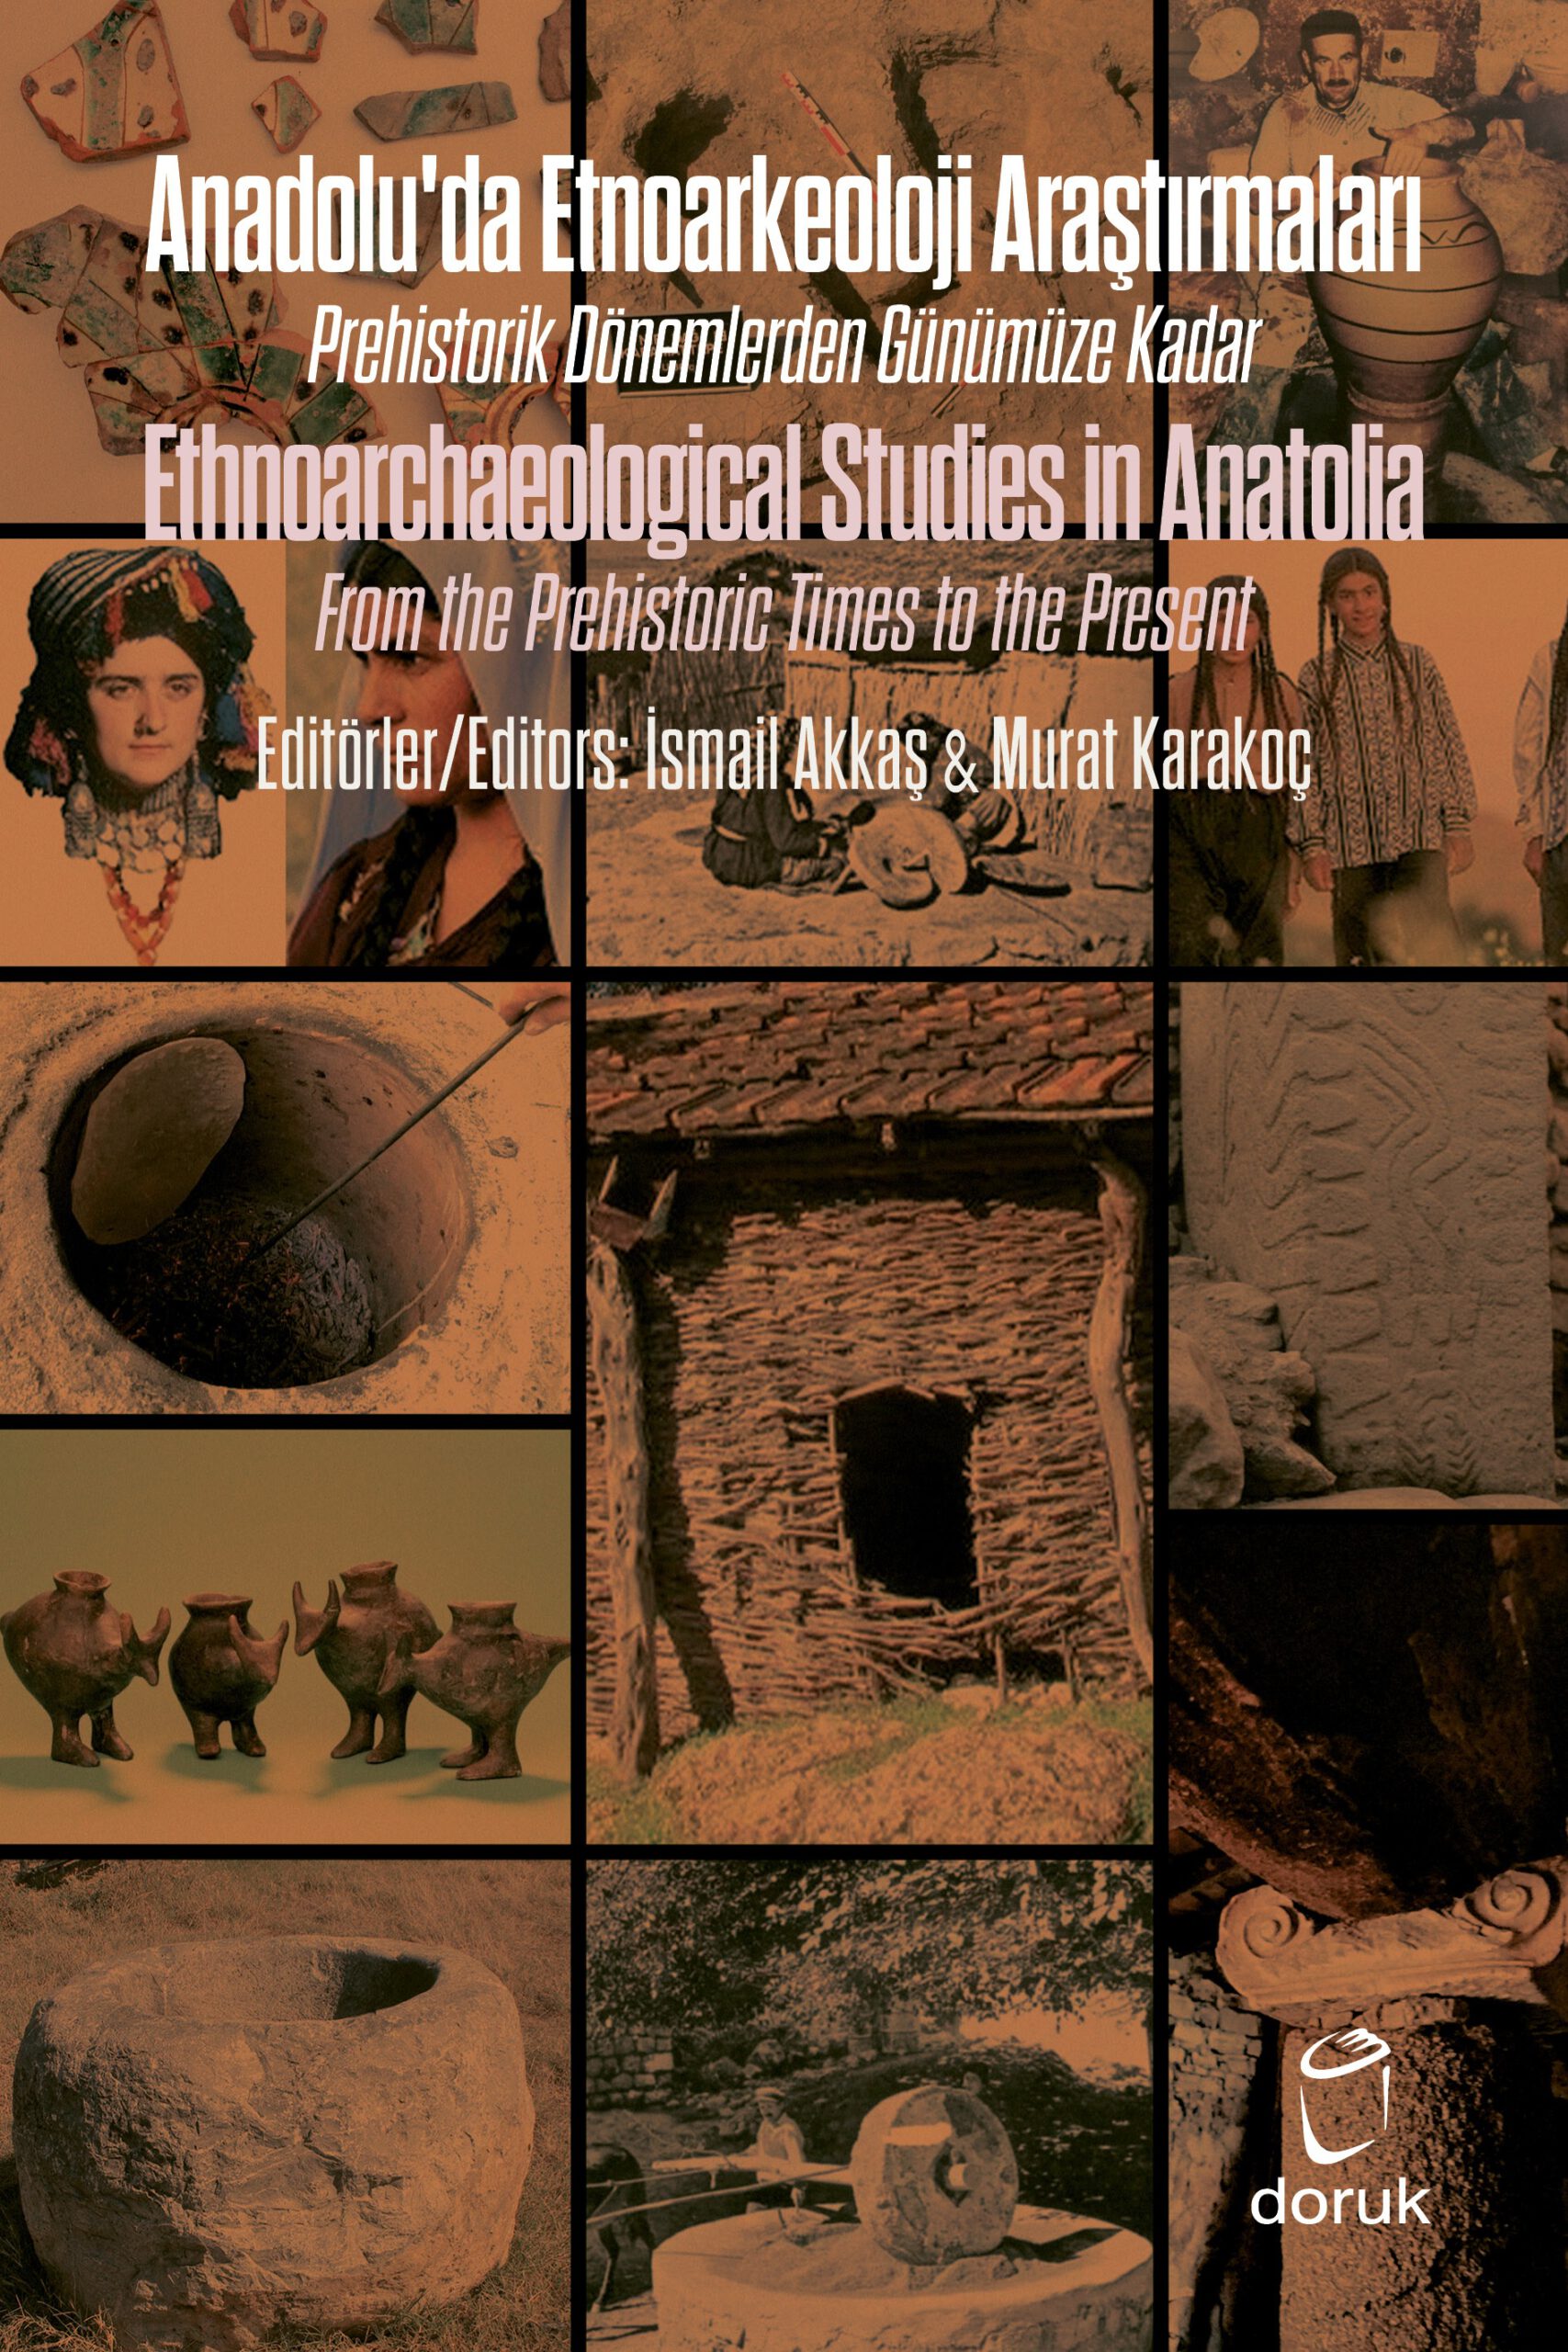 Anadolu’da Etnoarkeoloji Araştırmaları – Ethnoarchaeological Studies in Anatolia